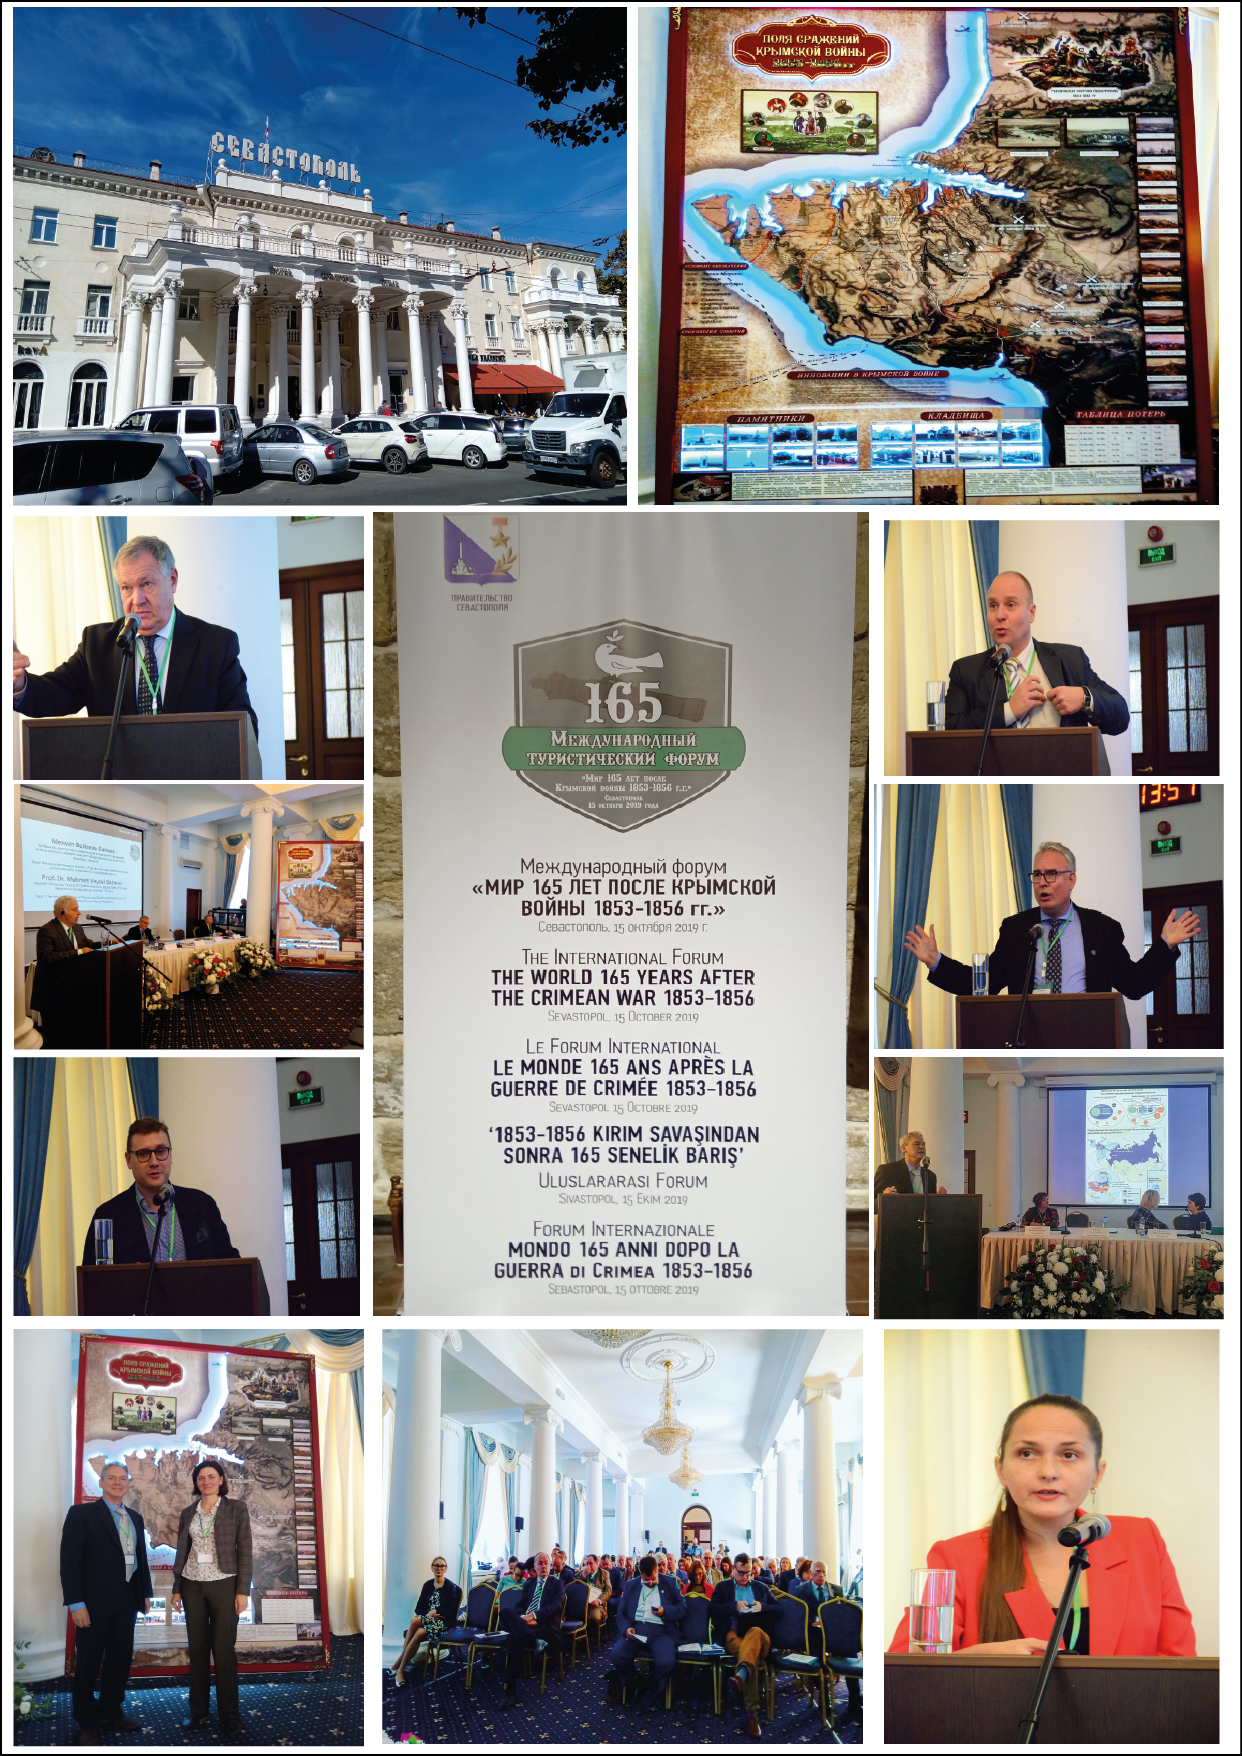 Le monde 165 ans après la guerre de Crimée 1853-1856 – Forum international – Sébastopol – 15 octobre 2019